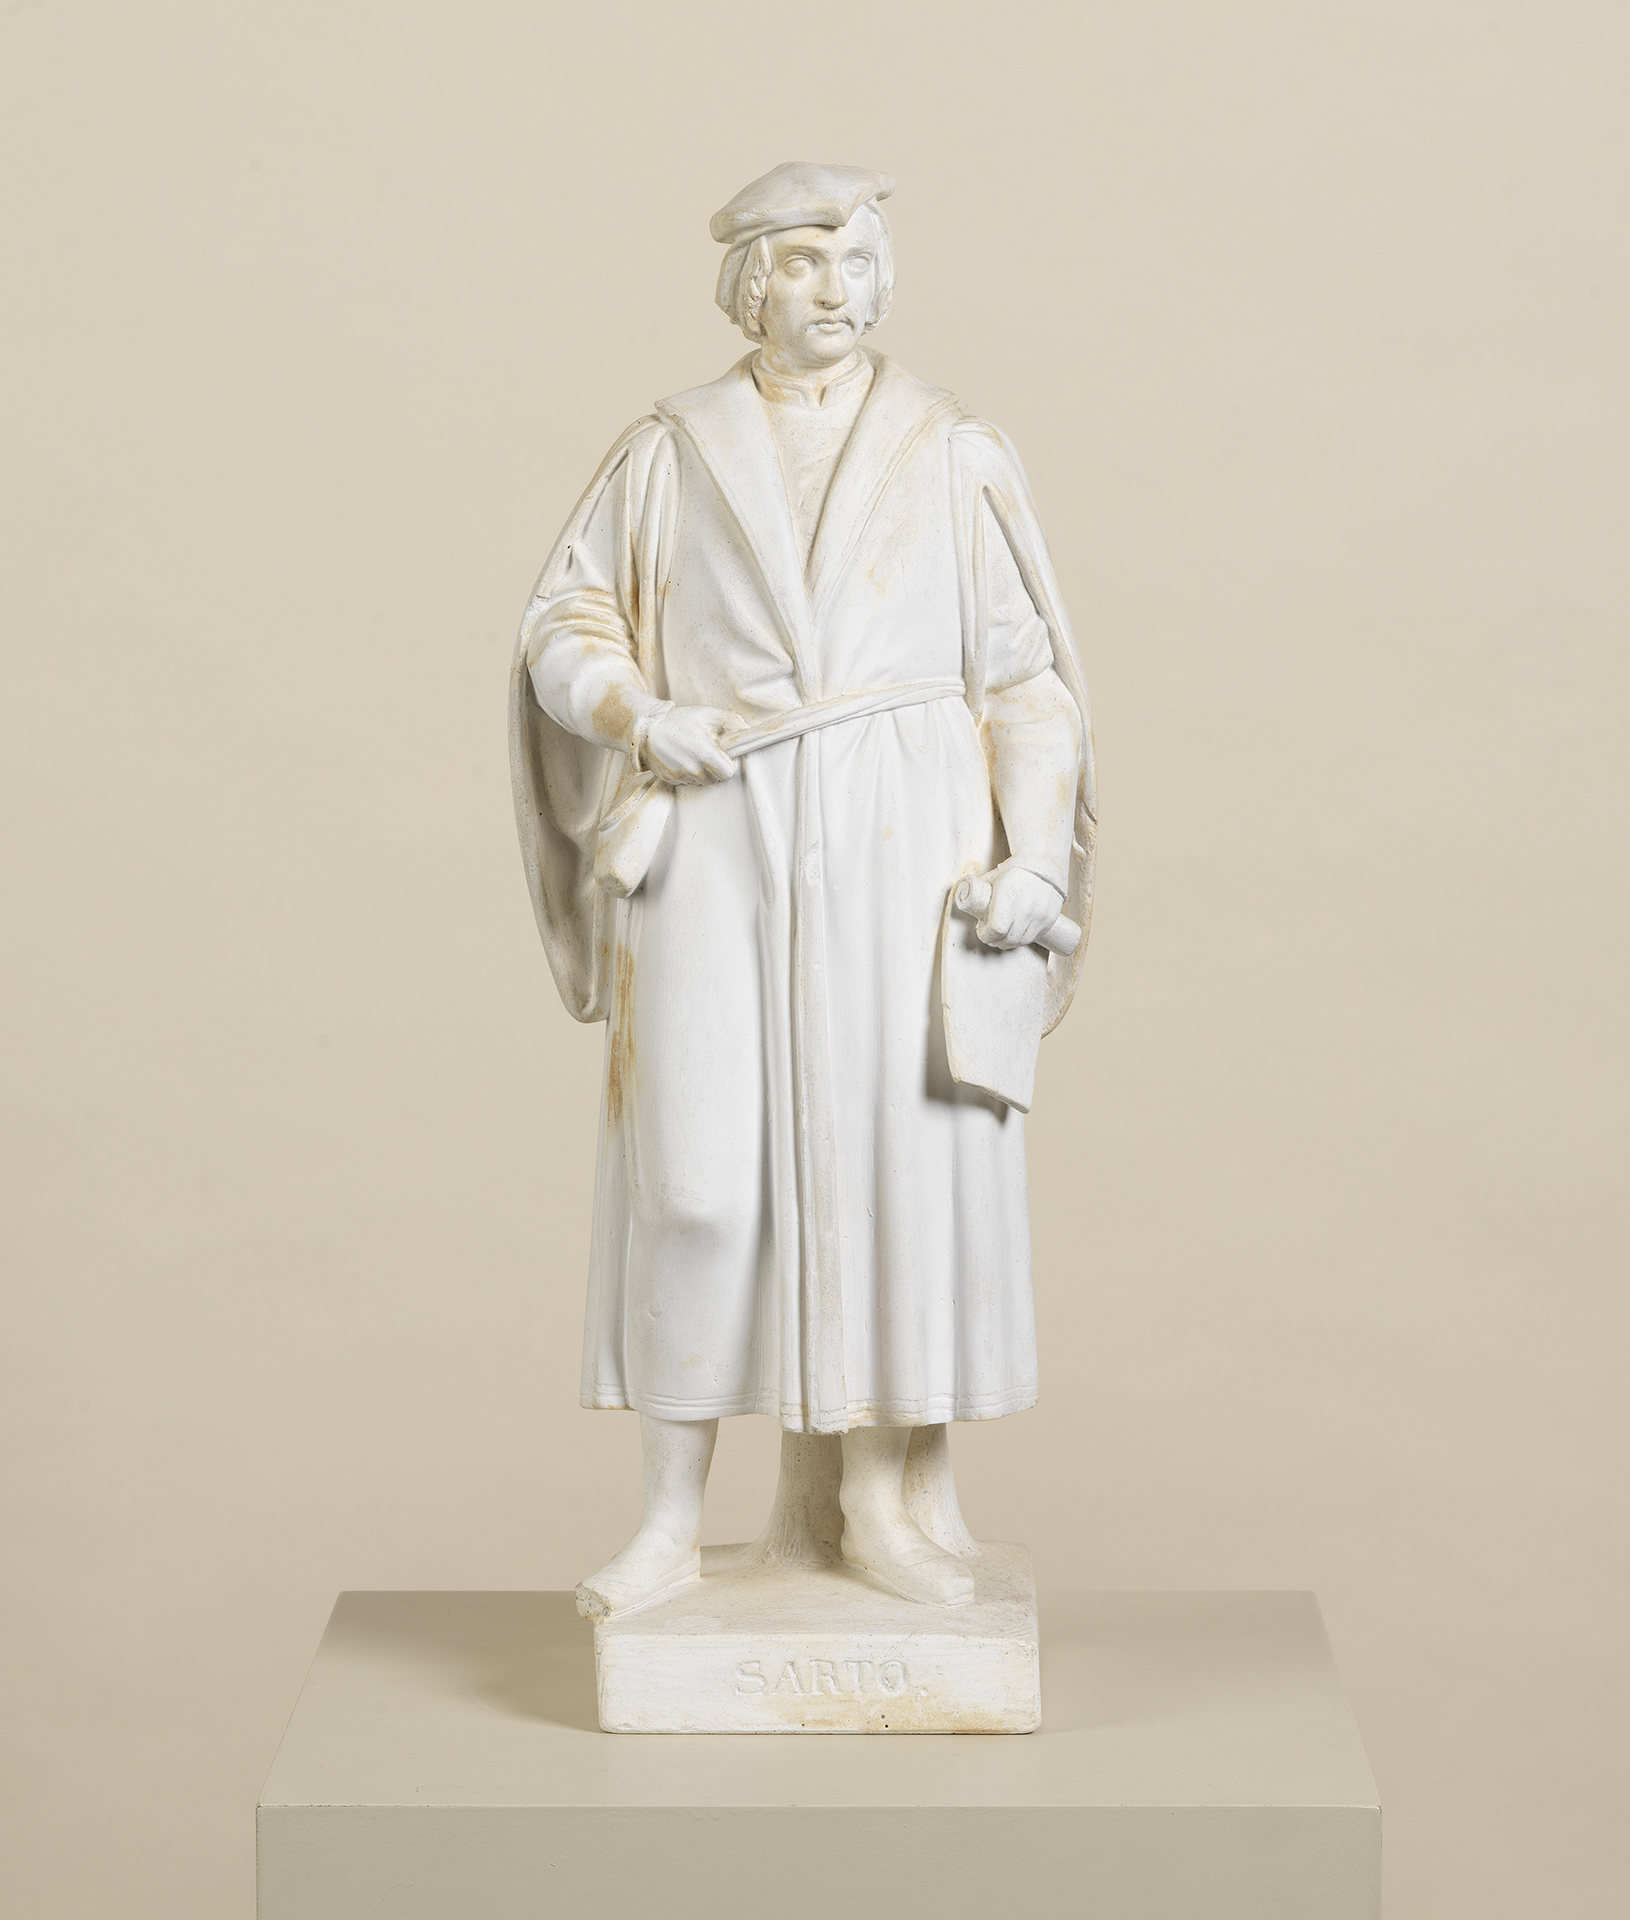 Die Skulptur zeigt den Künstler Andea del Sarto. Er trägt einen Mantel und eine Mütze. Das Kunstwerk stammt von dem Bildhauer Ludwig Schwanthaler.